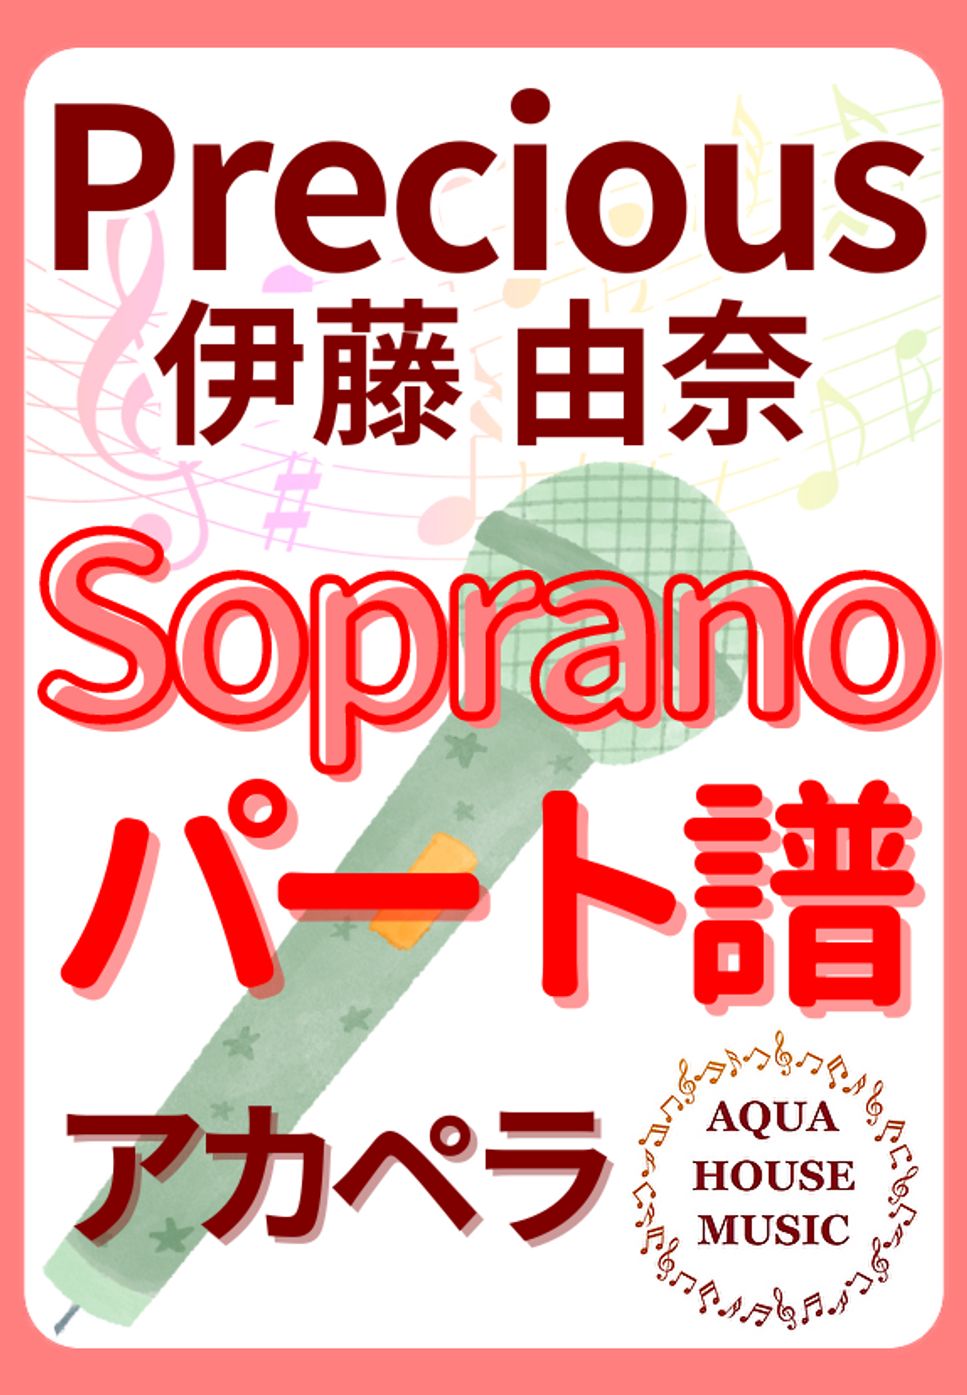 伊藤 由奈 - PRECIOUS (アカペラ楽譜♪Sopranoパート譜) by 飯田 亜紗子